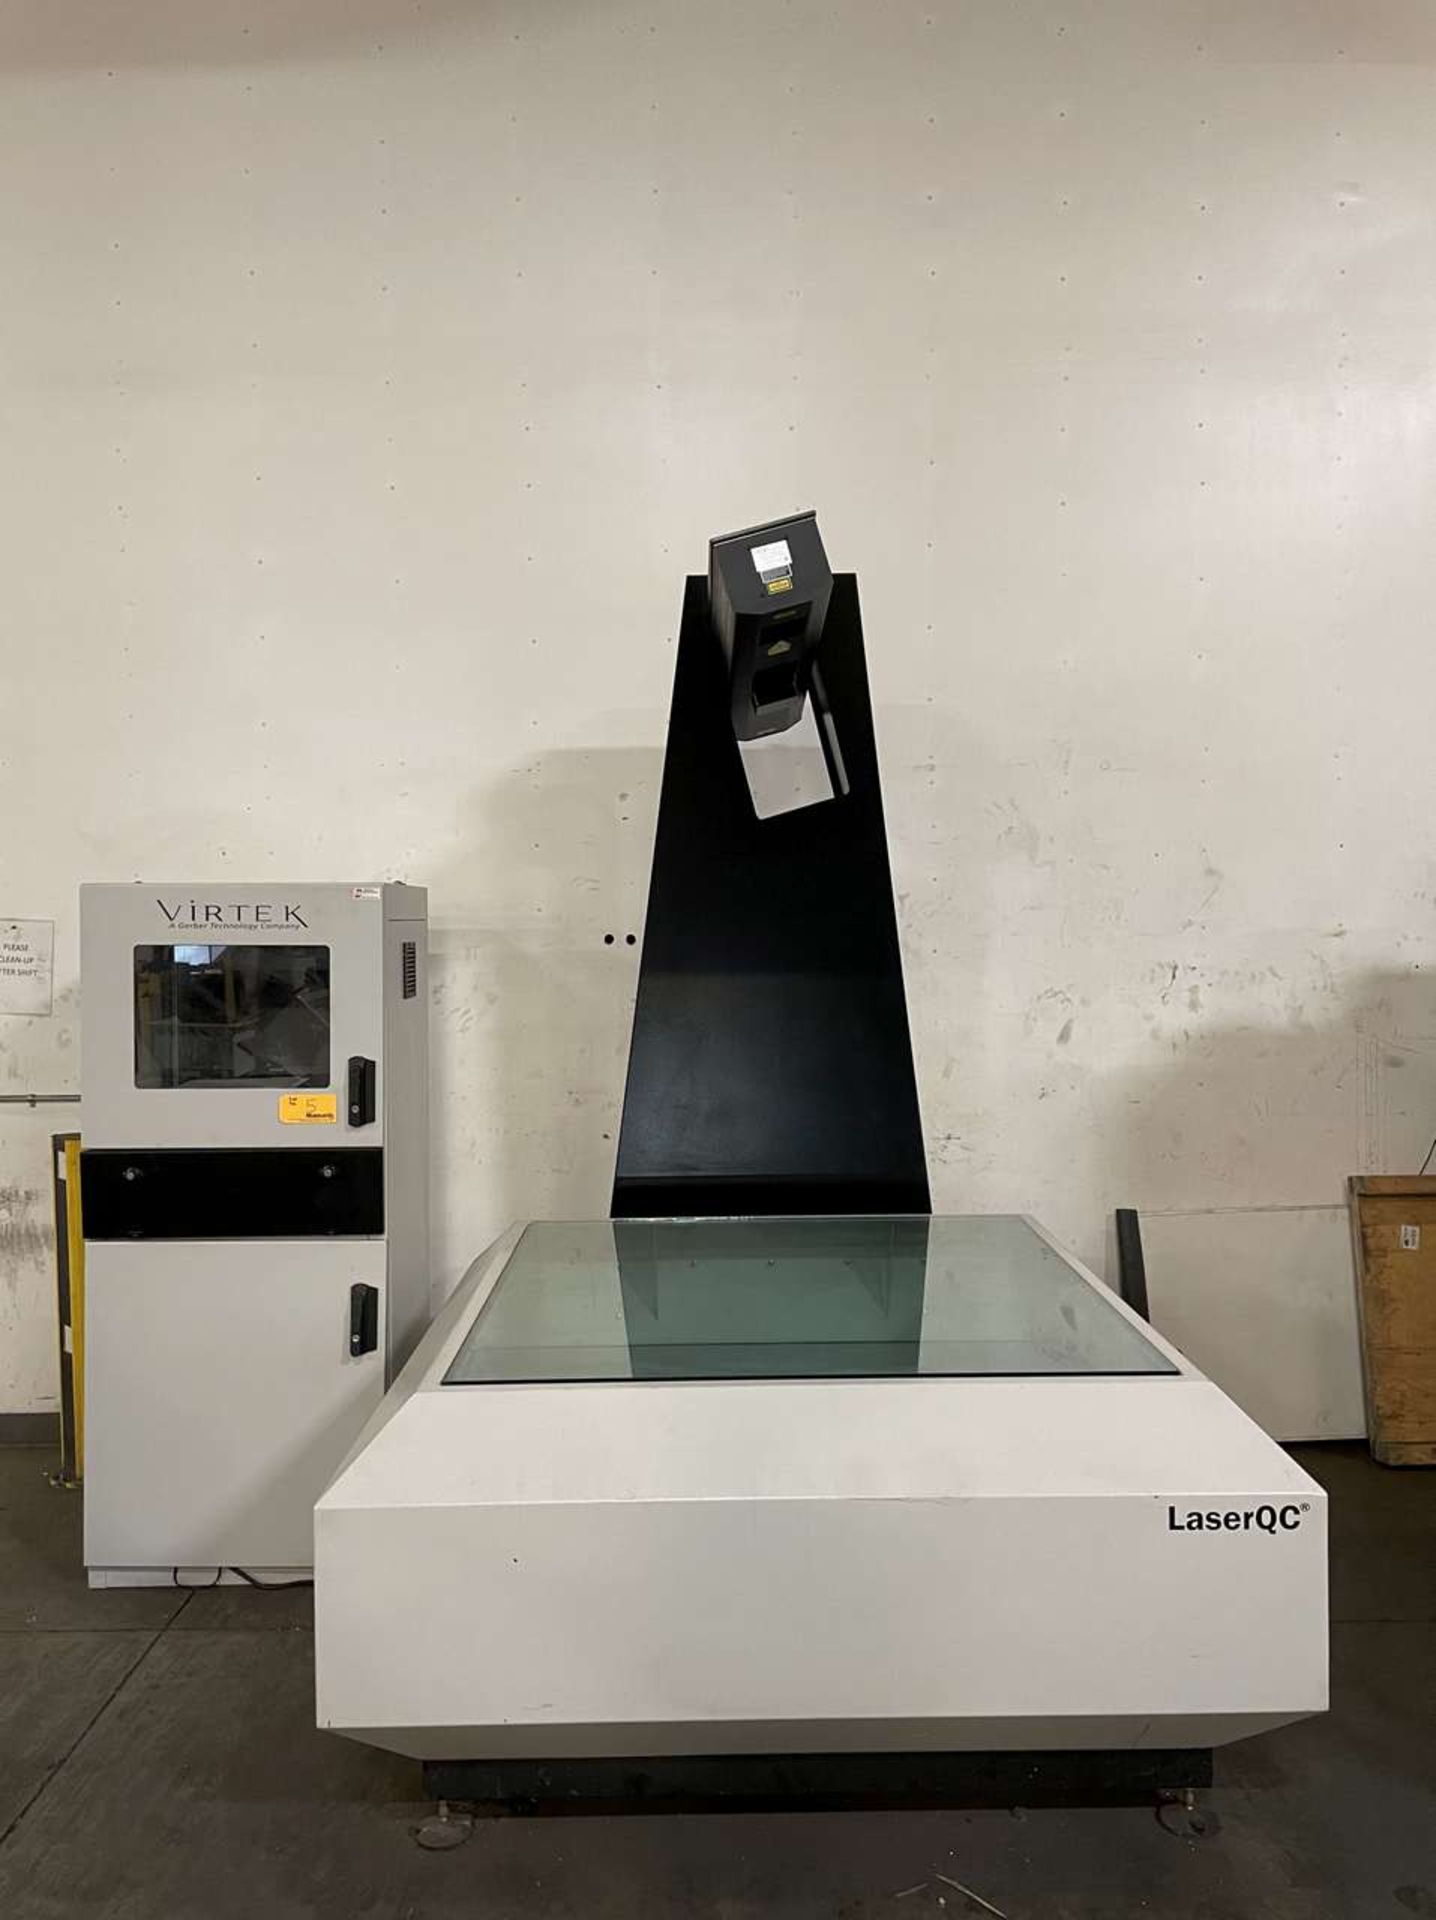 2018 Virtek LaserQC 1200 Laser Inspection System - Image 2 of 17